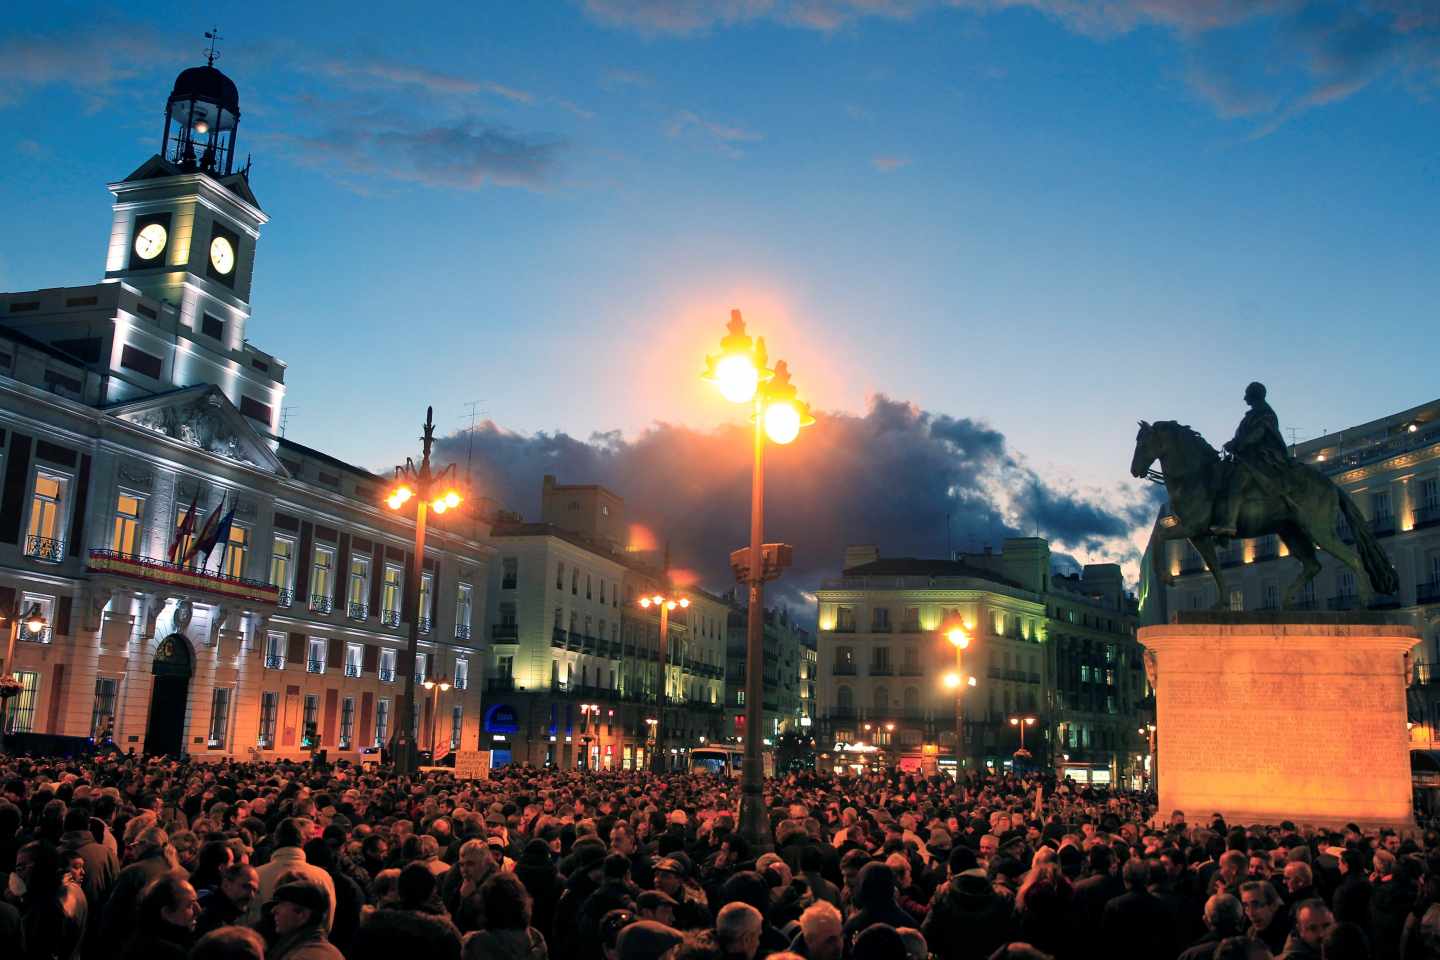 Concentración de taxistas en la Puerta del Sol.